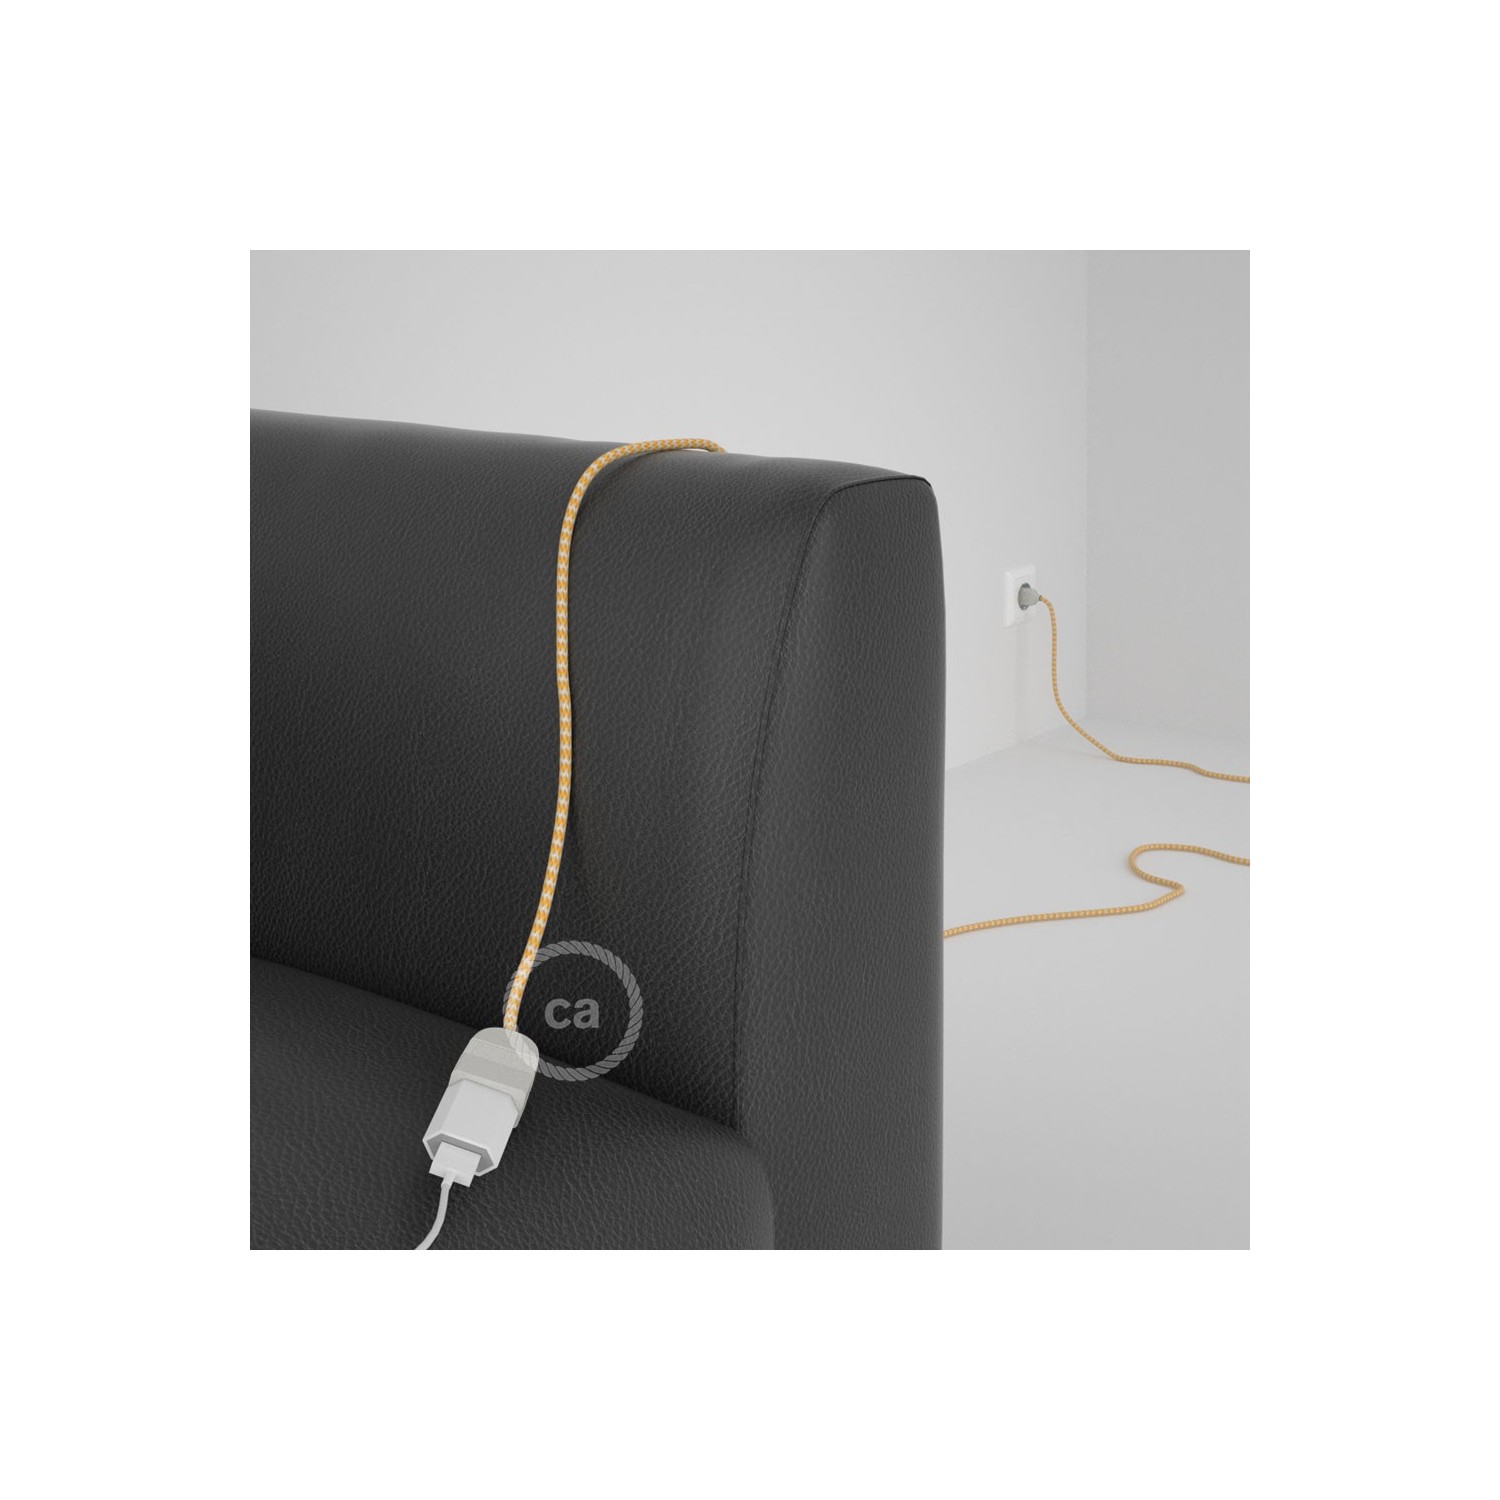 Rallonge électrique avec câble textile RZ10 Effet Soie ZigZag Blanc-Jaune 2P 10A Made in Italy.